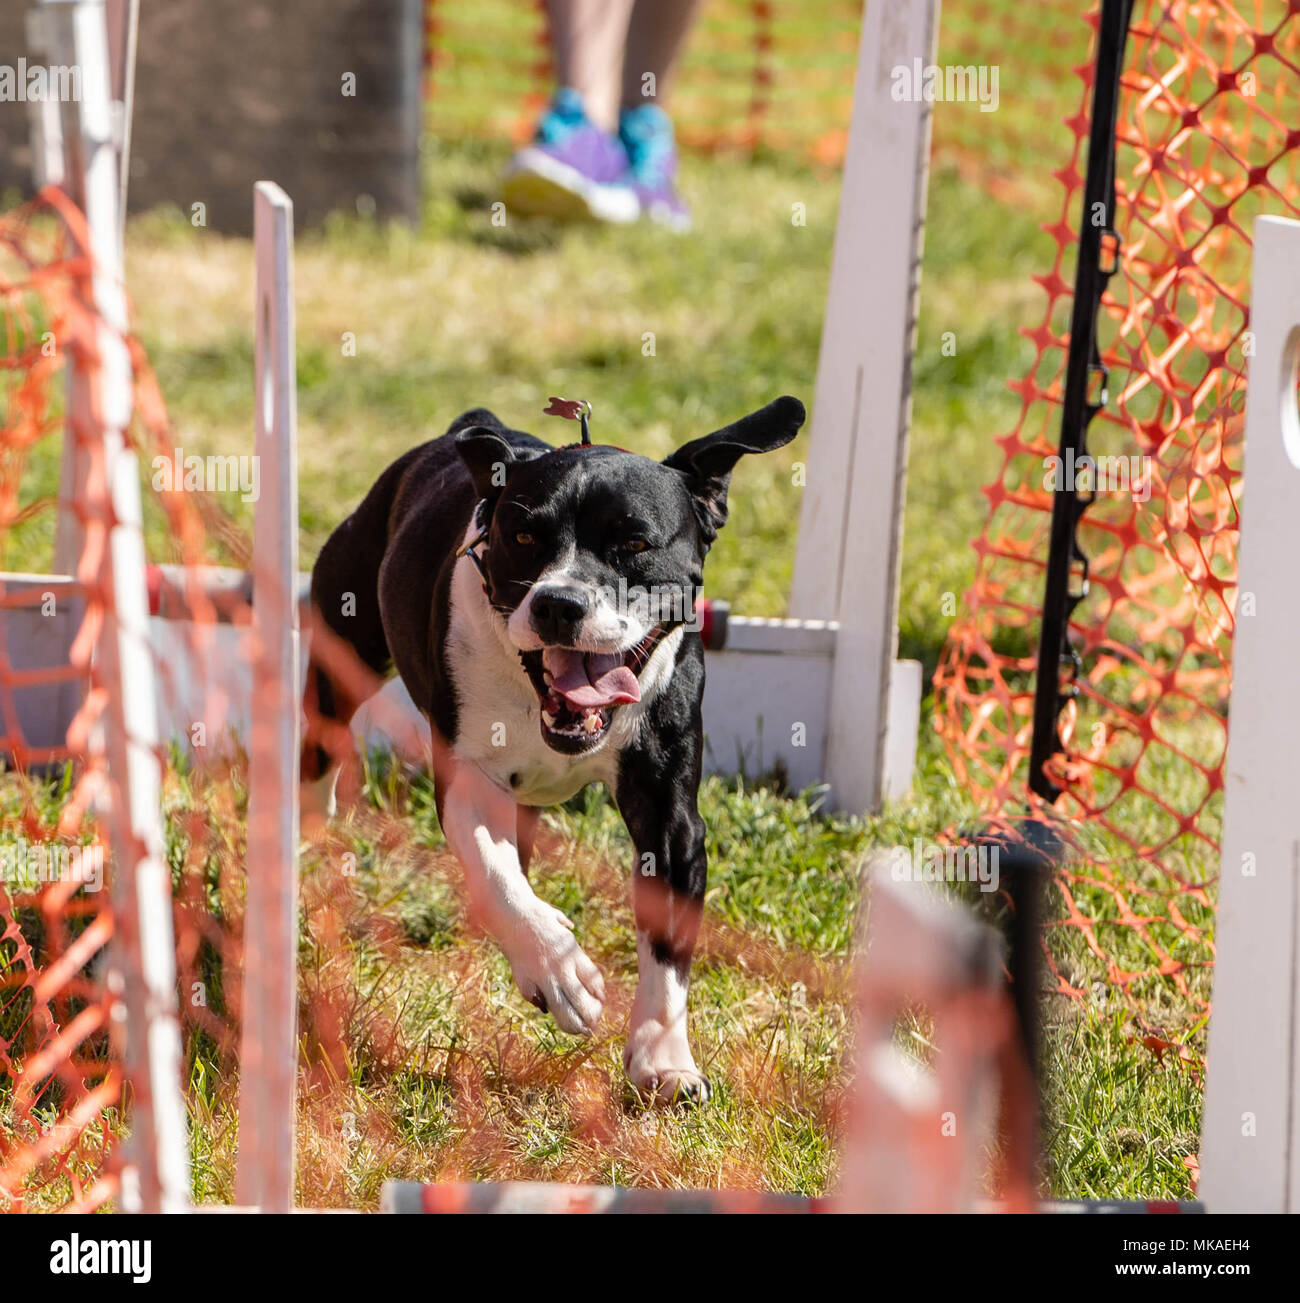 Brentwood Essex, 7 maggio 2018 Tutto su cani mostrano, Brentwood Essex: Un cane corre l'agilità di credito corso Ian Davidson/Alamy Livwe News Foto Stock